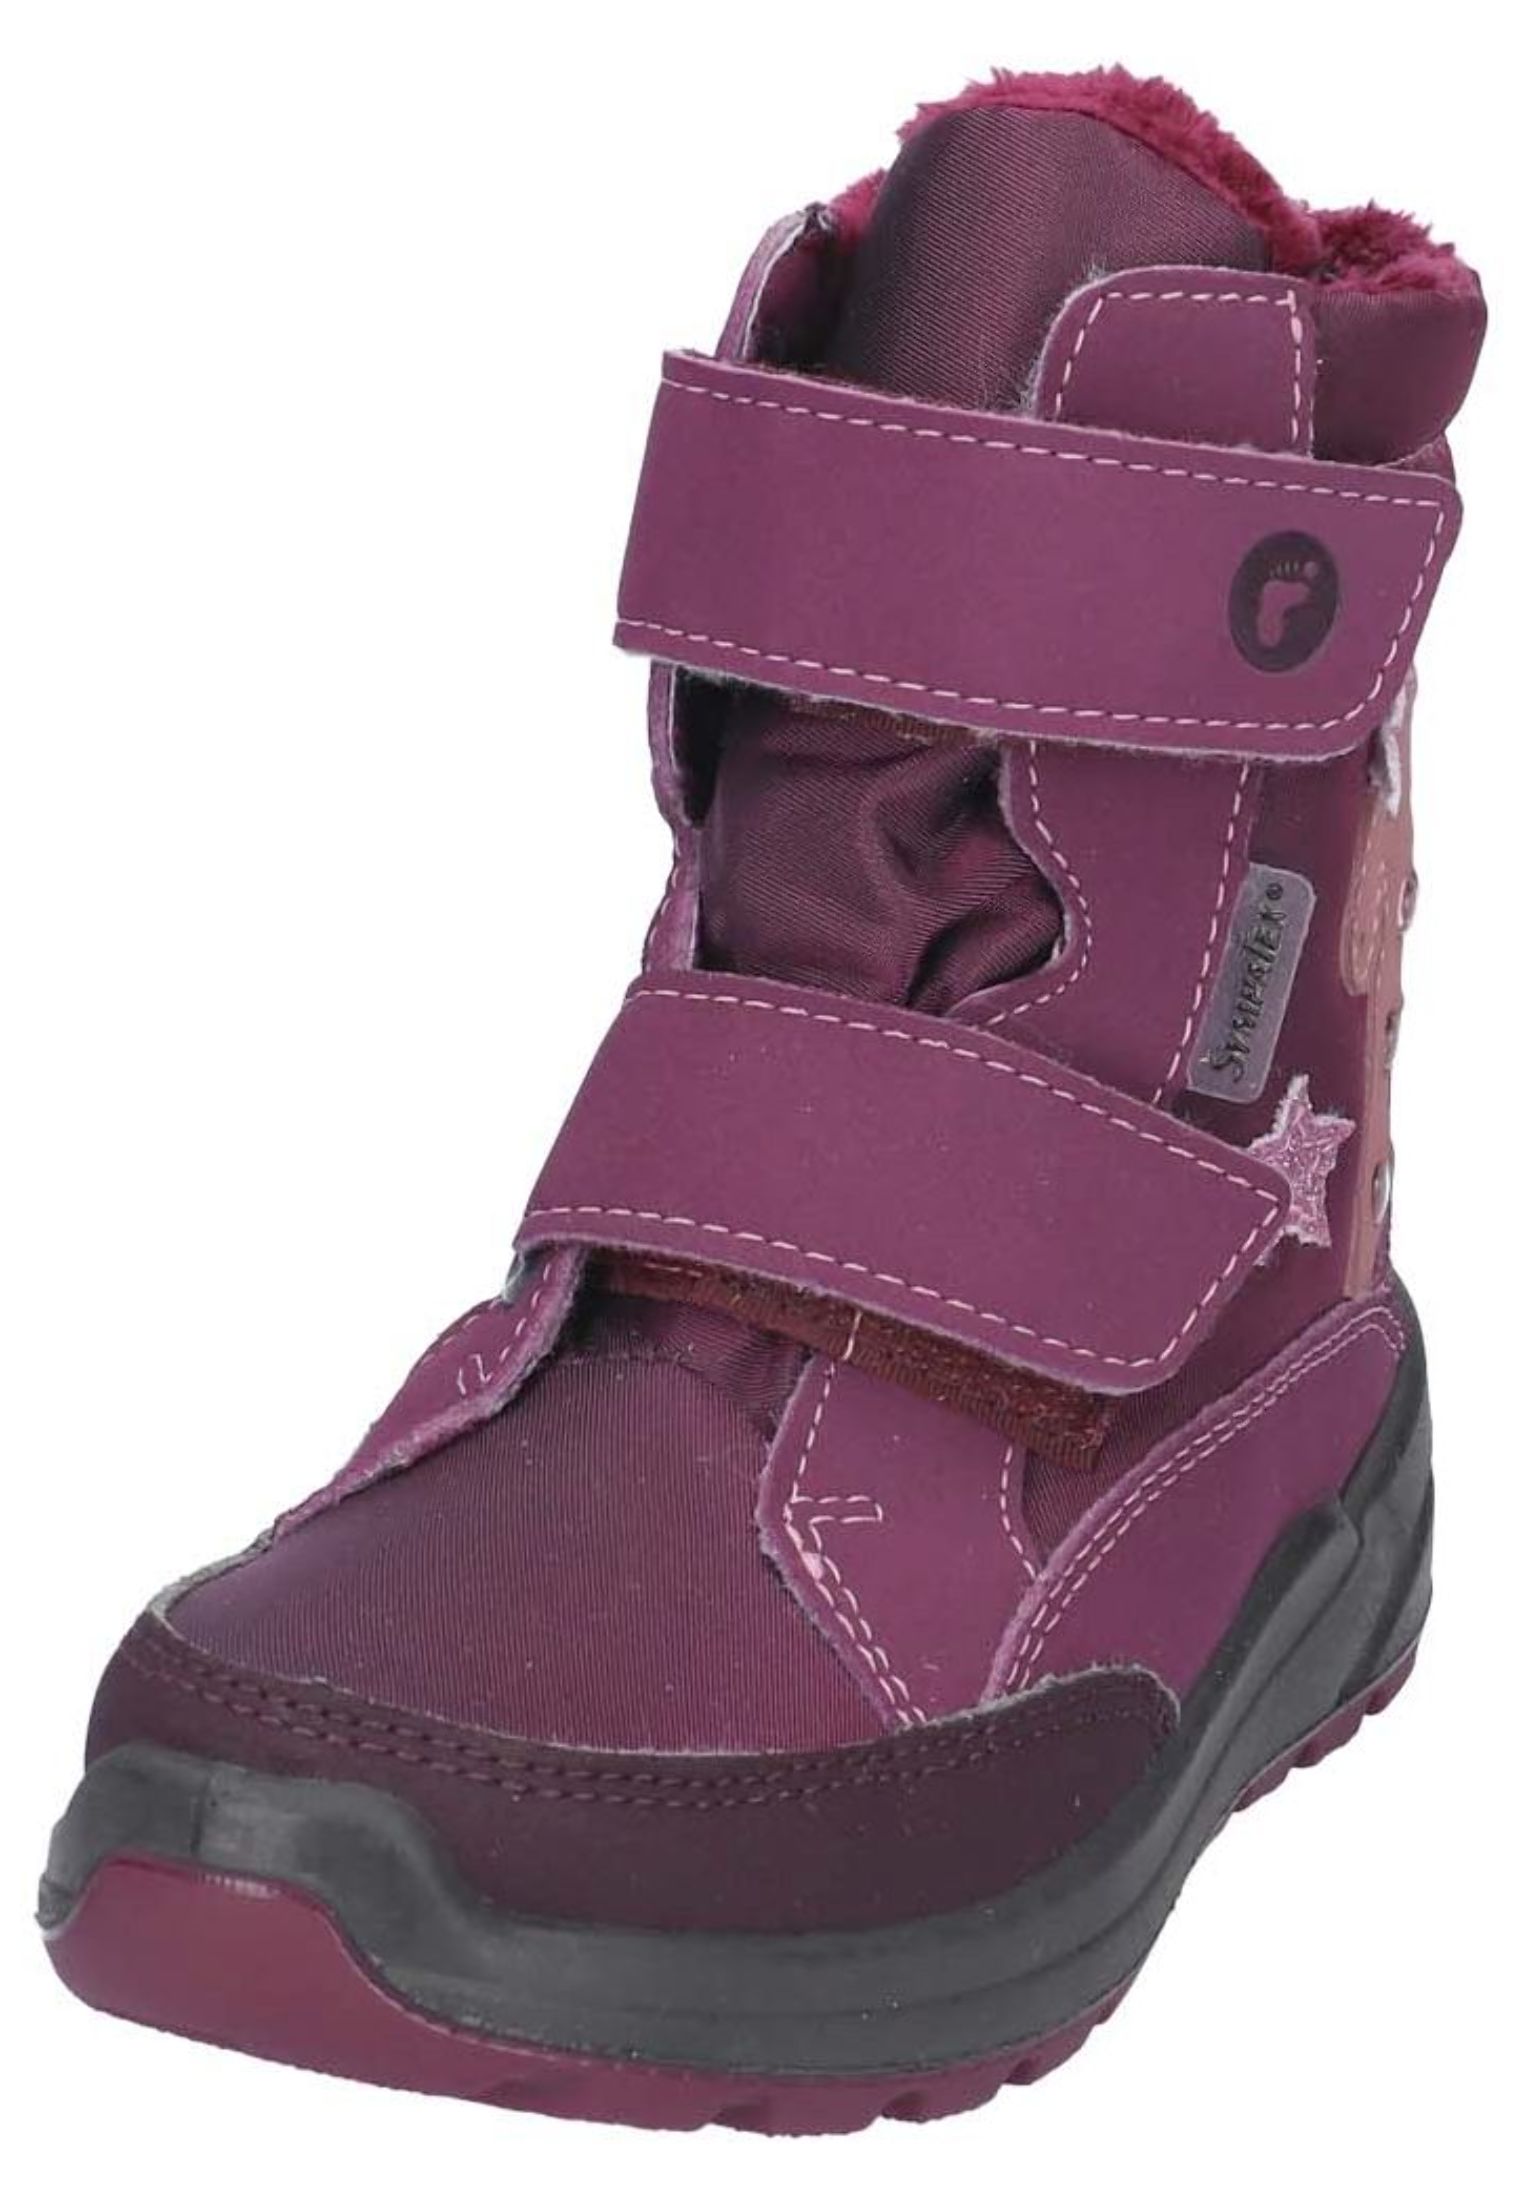 Высокие ботинки Ricosta, цвет Merlot высокие ботинки ricosta greta фиолетовый